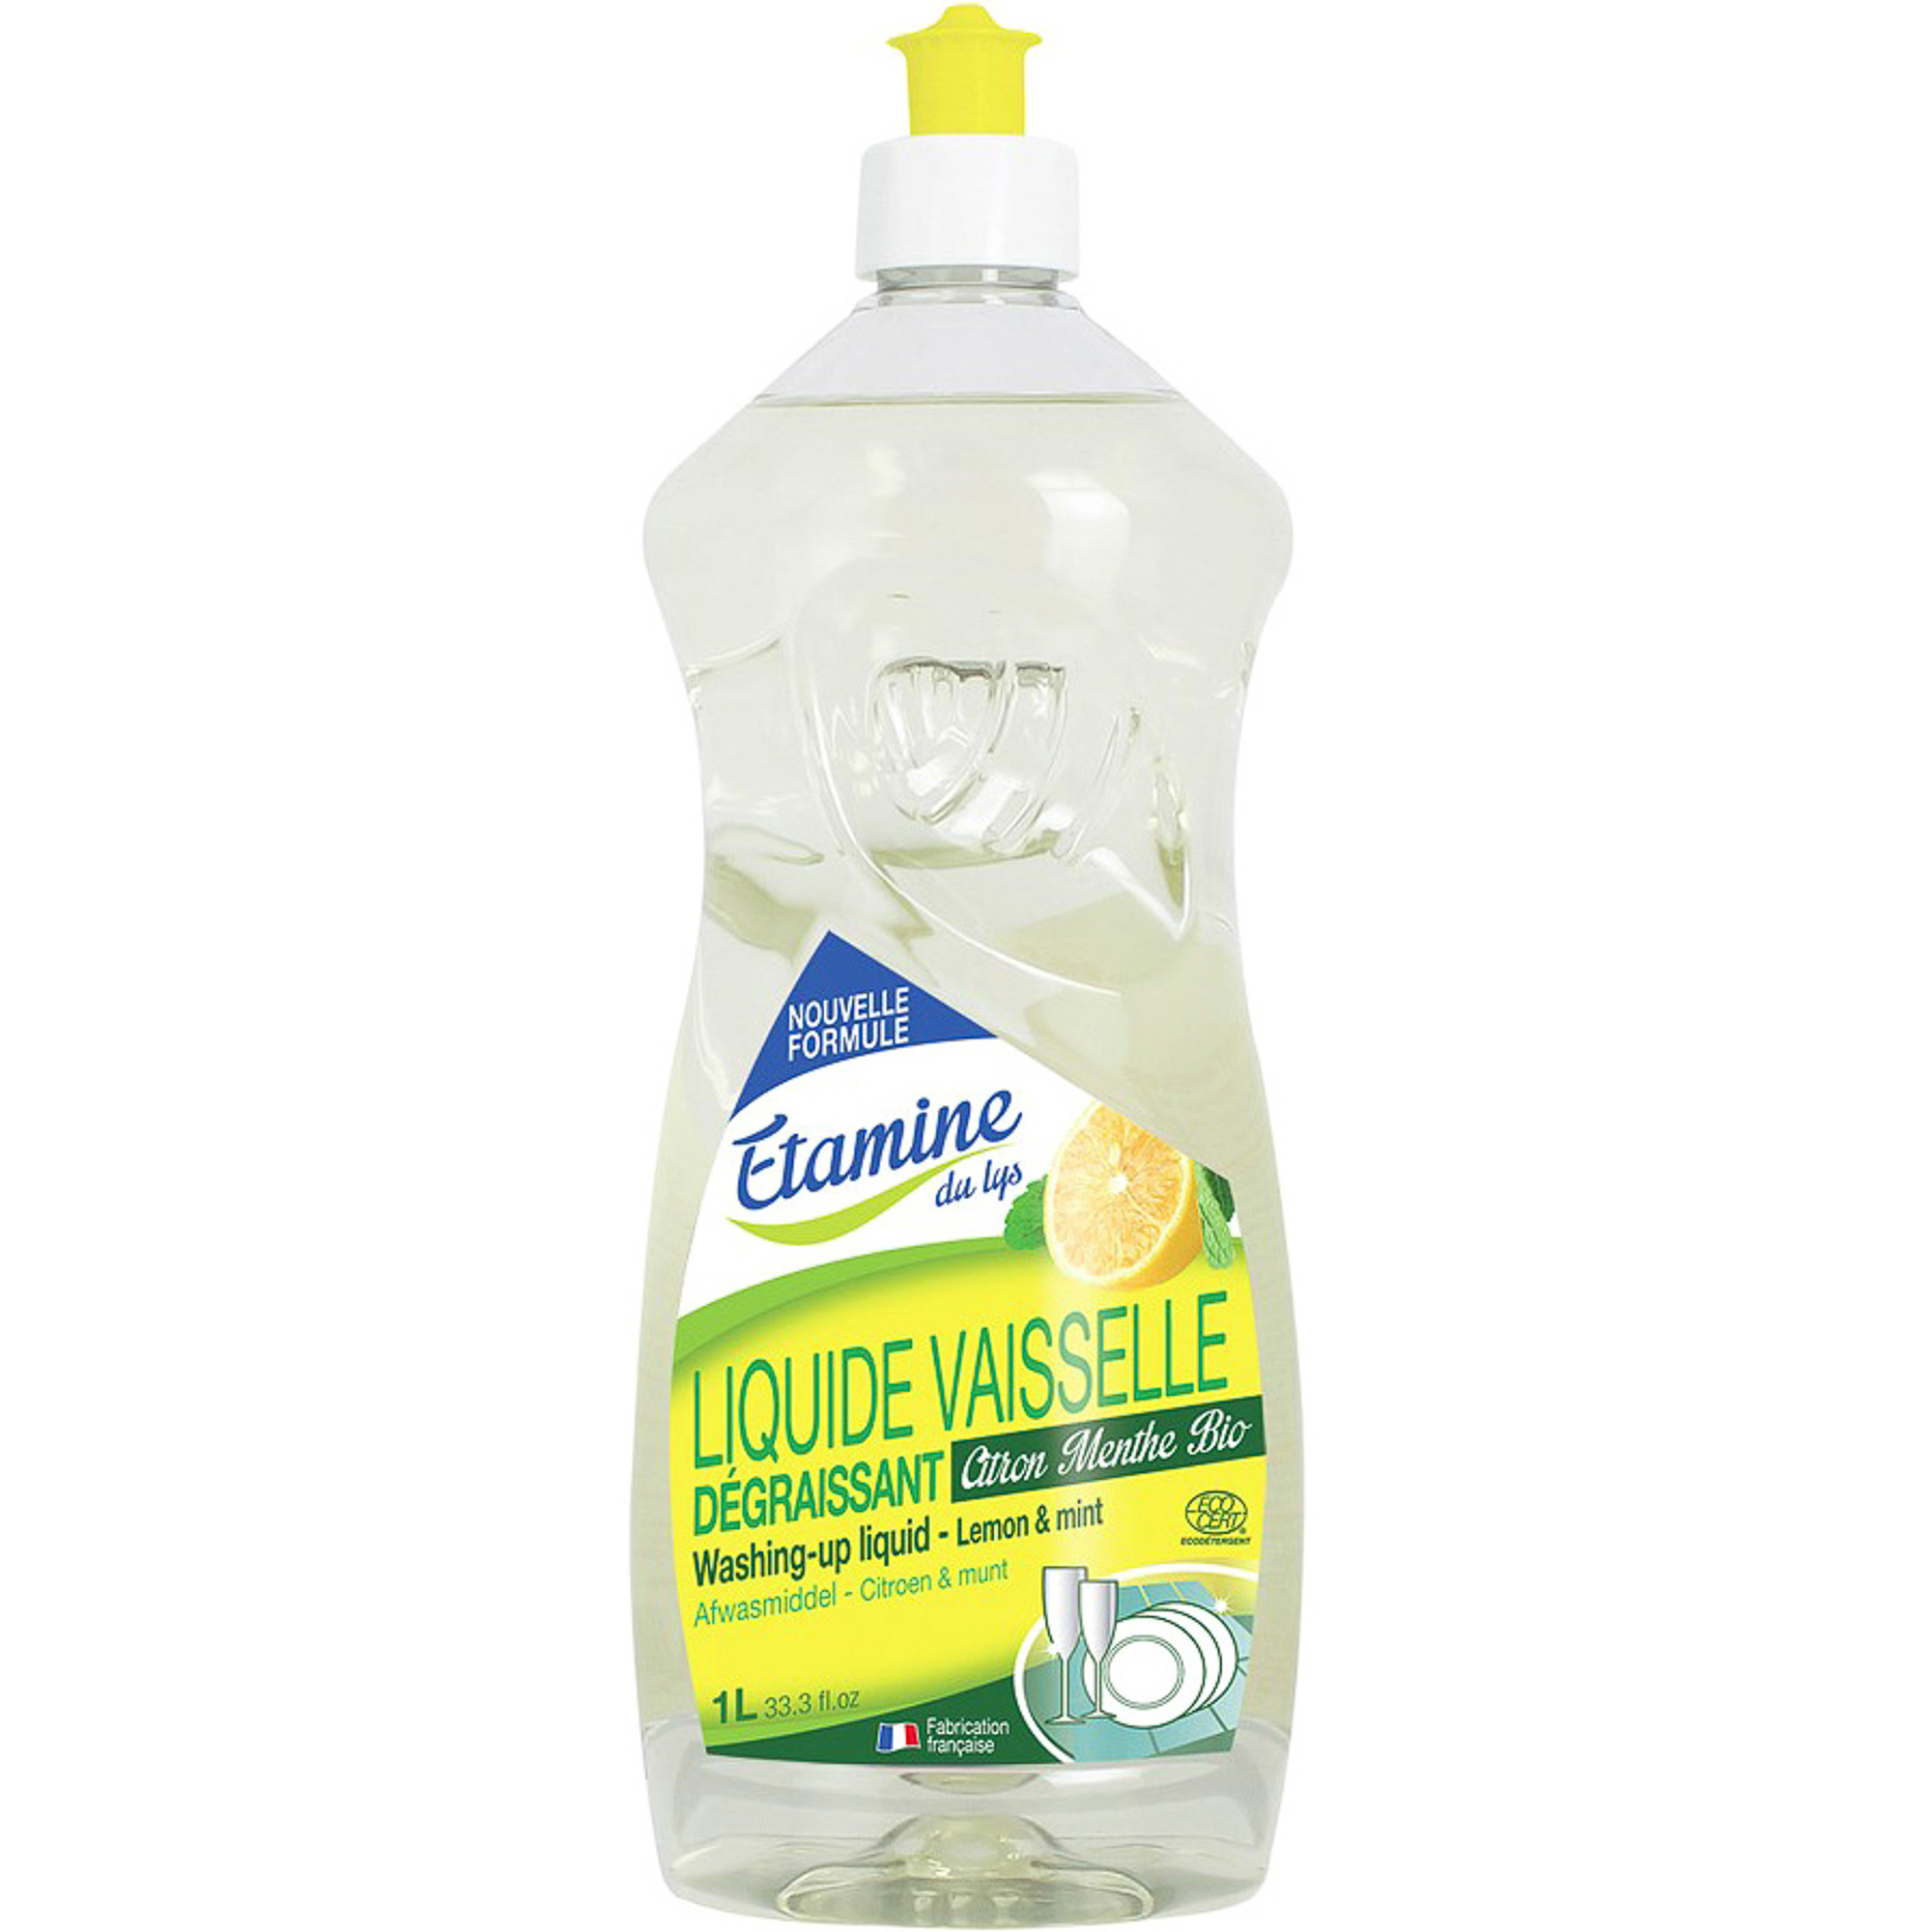 фото Средство для мытья посуды etamine du lys лимон и мята 1 л